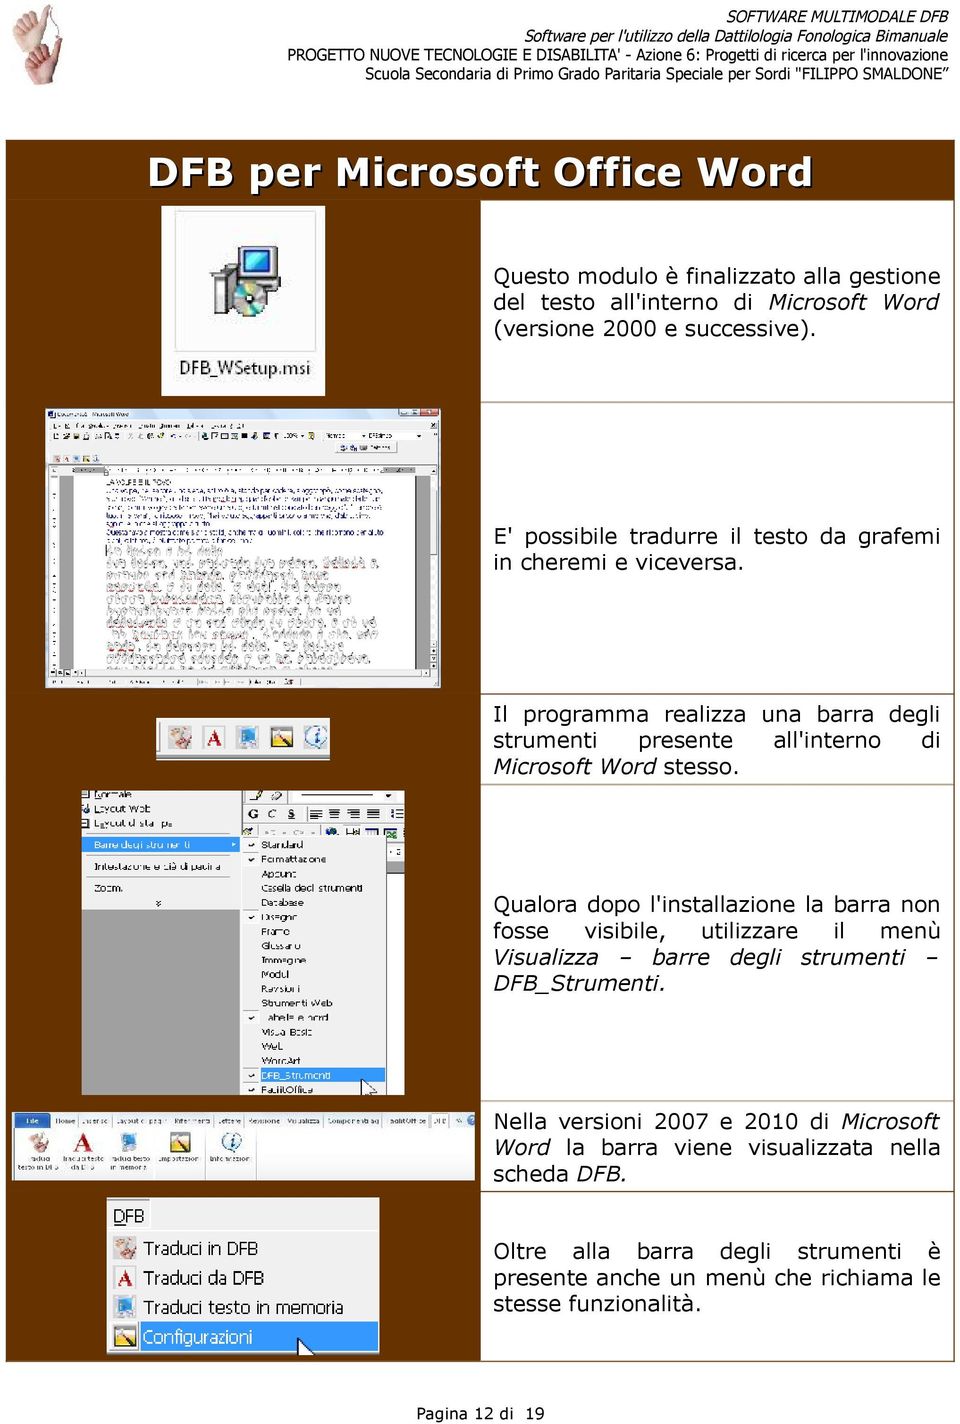 Il programma realizza una barra degli strumenti presente all'interno di Microsoft Word stesso.